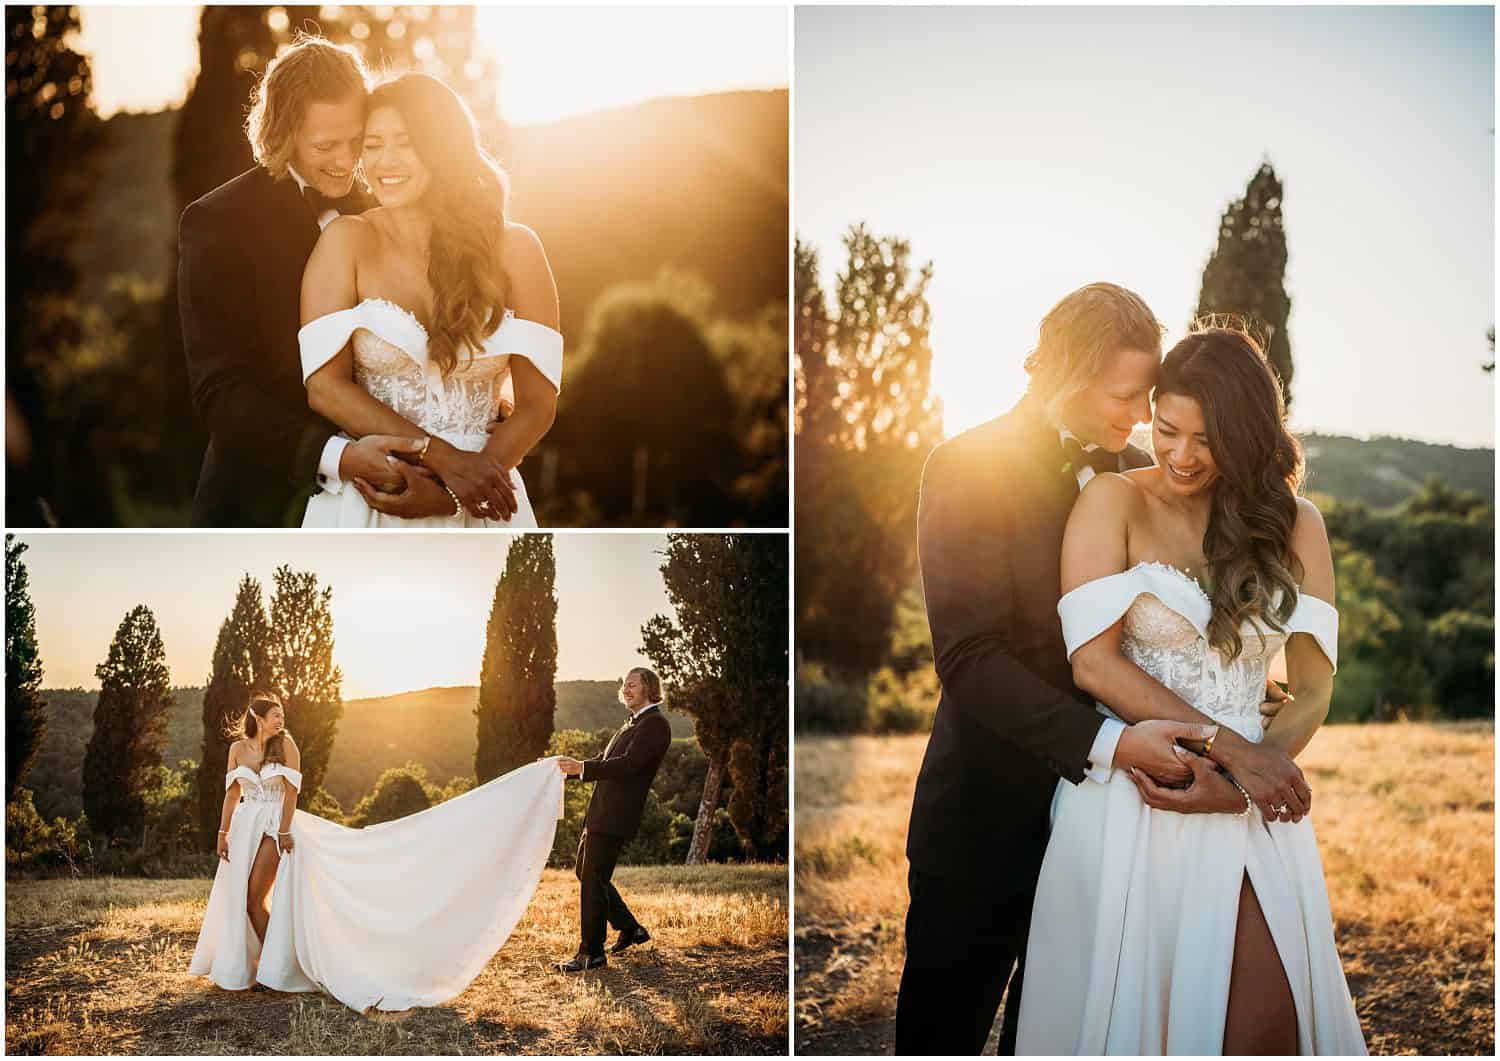 Destination wedding photo shoot at sunset in Borgo Castelvecchi, Chianti, Tuscany, images by Ludovica & Valerio, wedding photographers